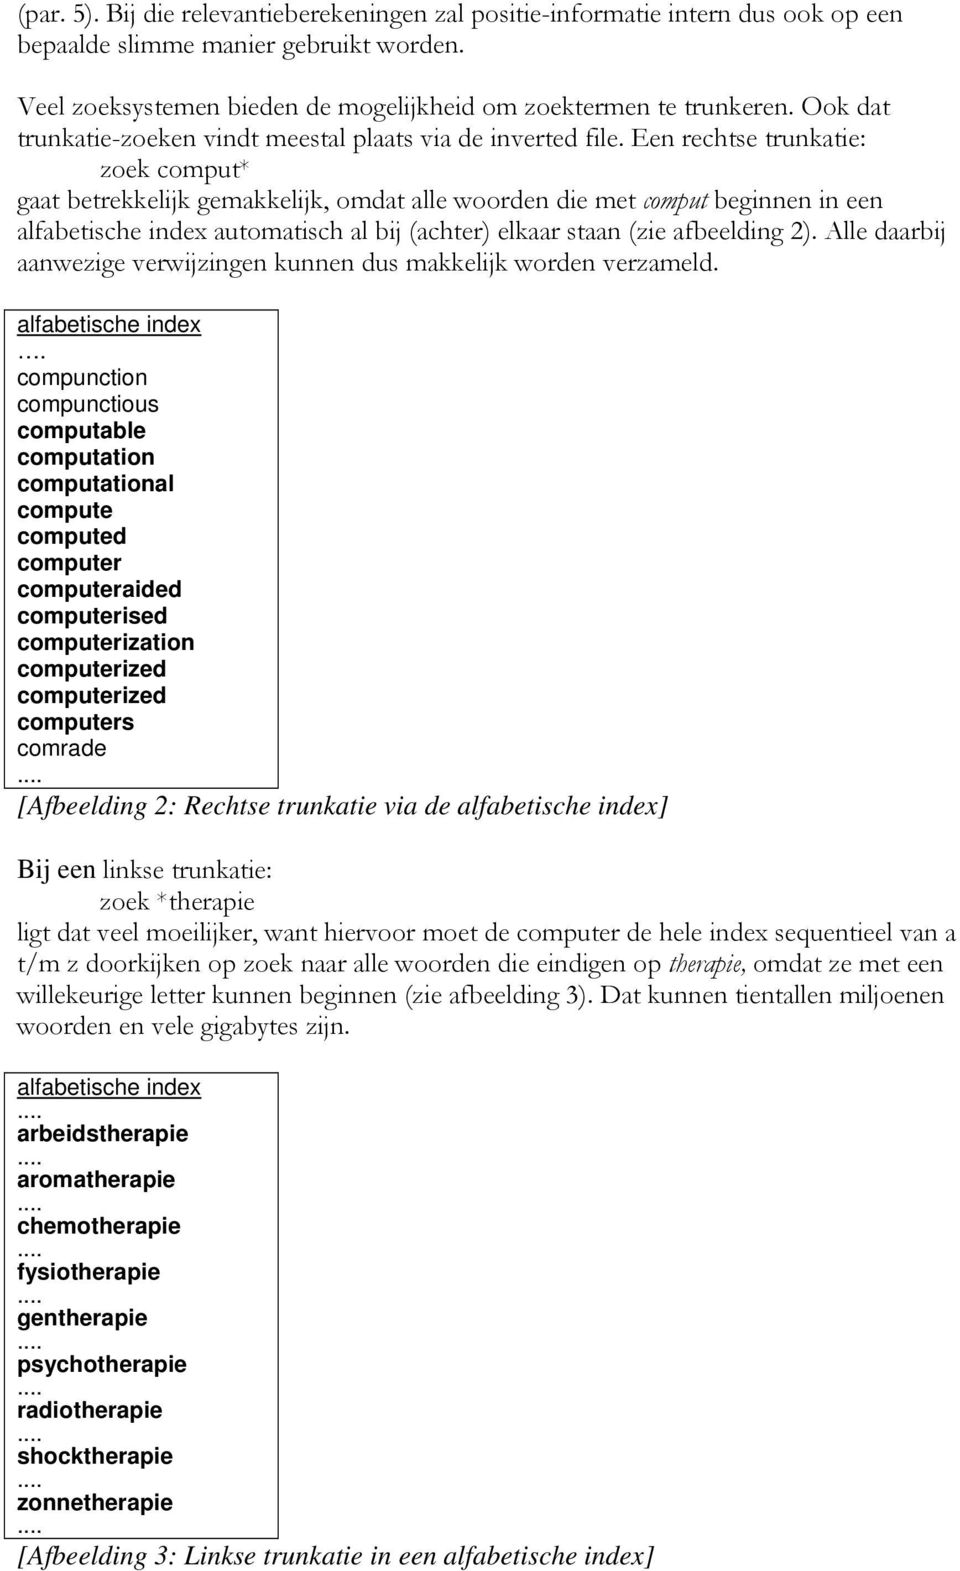 Een rechtse trunkatie: zoek comput* gaat betrekkelijk gemakkelijk, omdat alle woorden die met comput beginnen in een alfabetische index automatisch al bij (achter) elkaar staan (zie afbeelding 2).